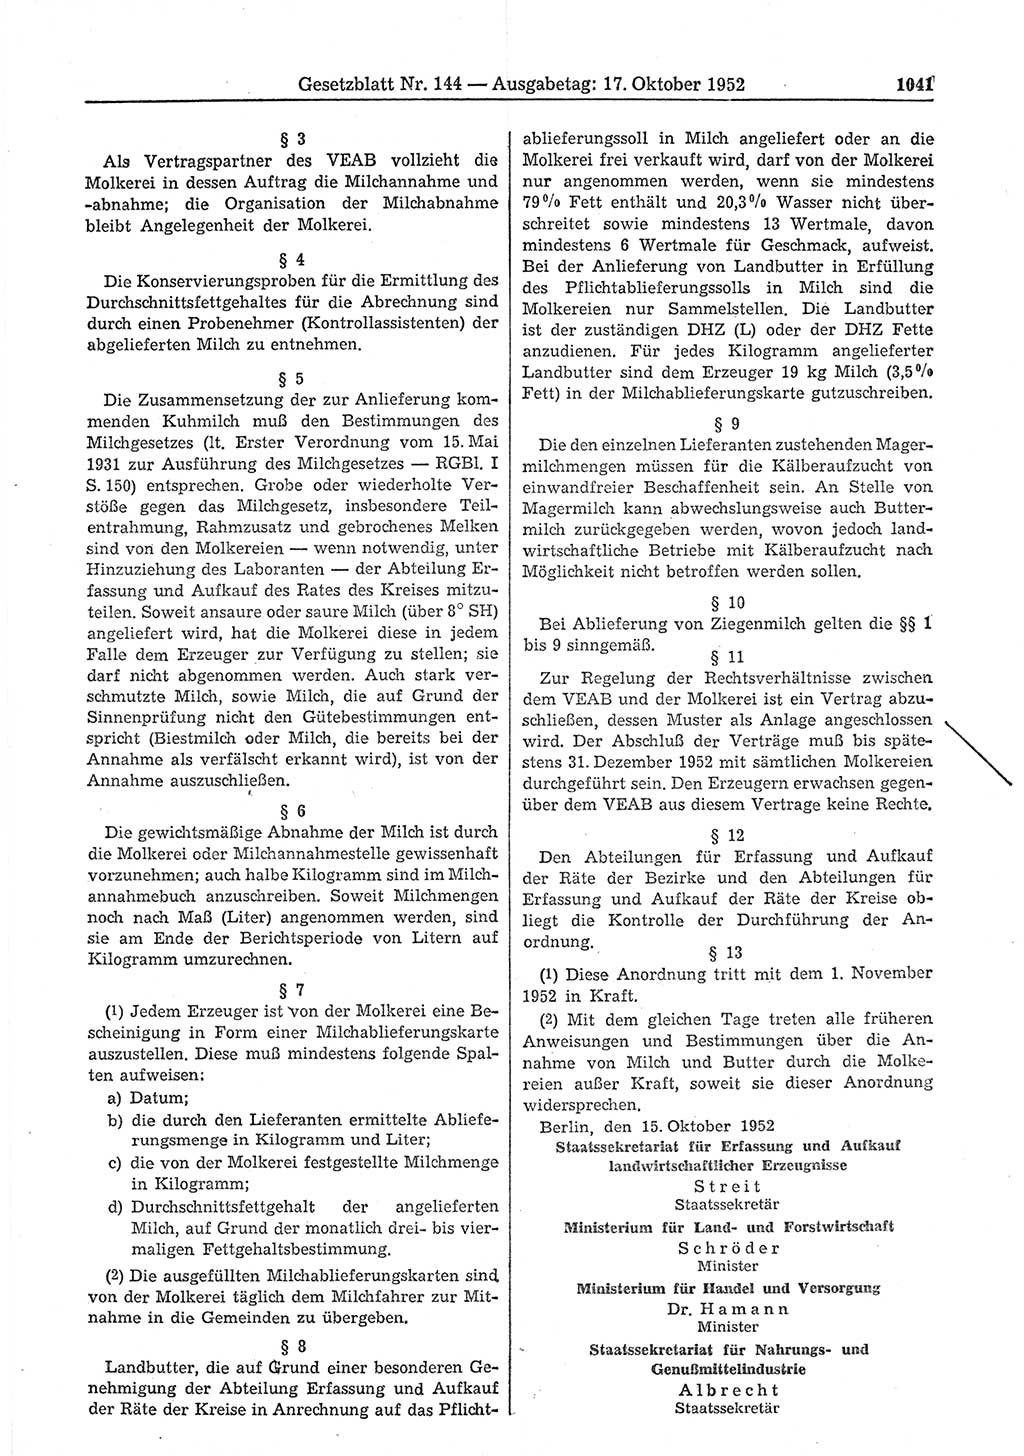 Gesetzblatt (GBl.) der Deutschen Demokratischen Republik (DDR) 1952, Seite 1041 (GBl. DDR 1952, S. 1041)